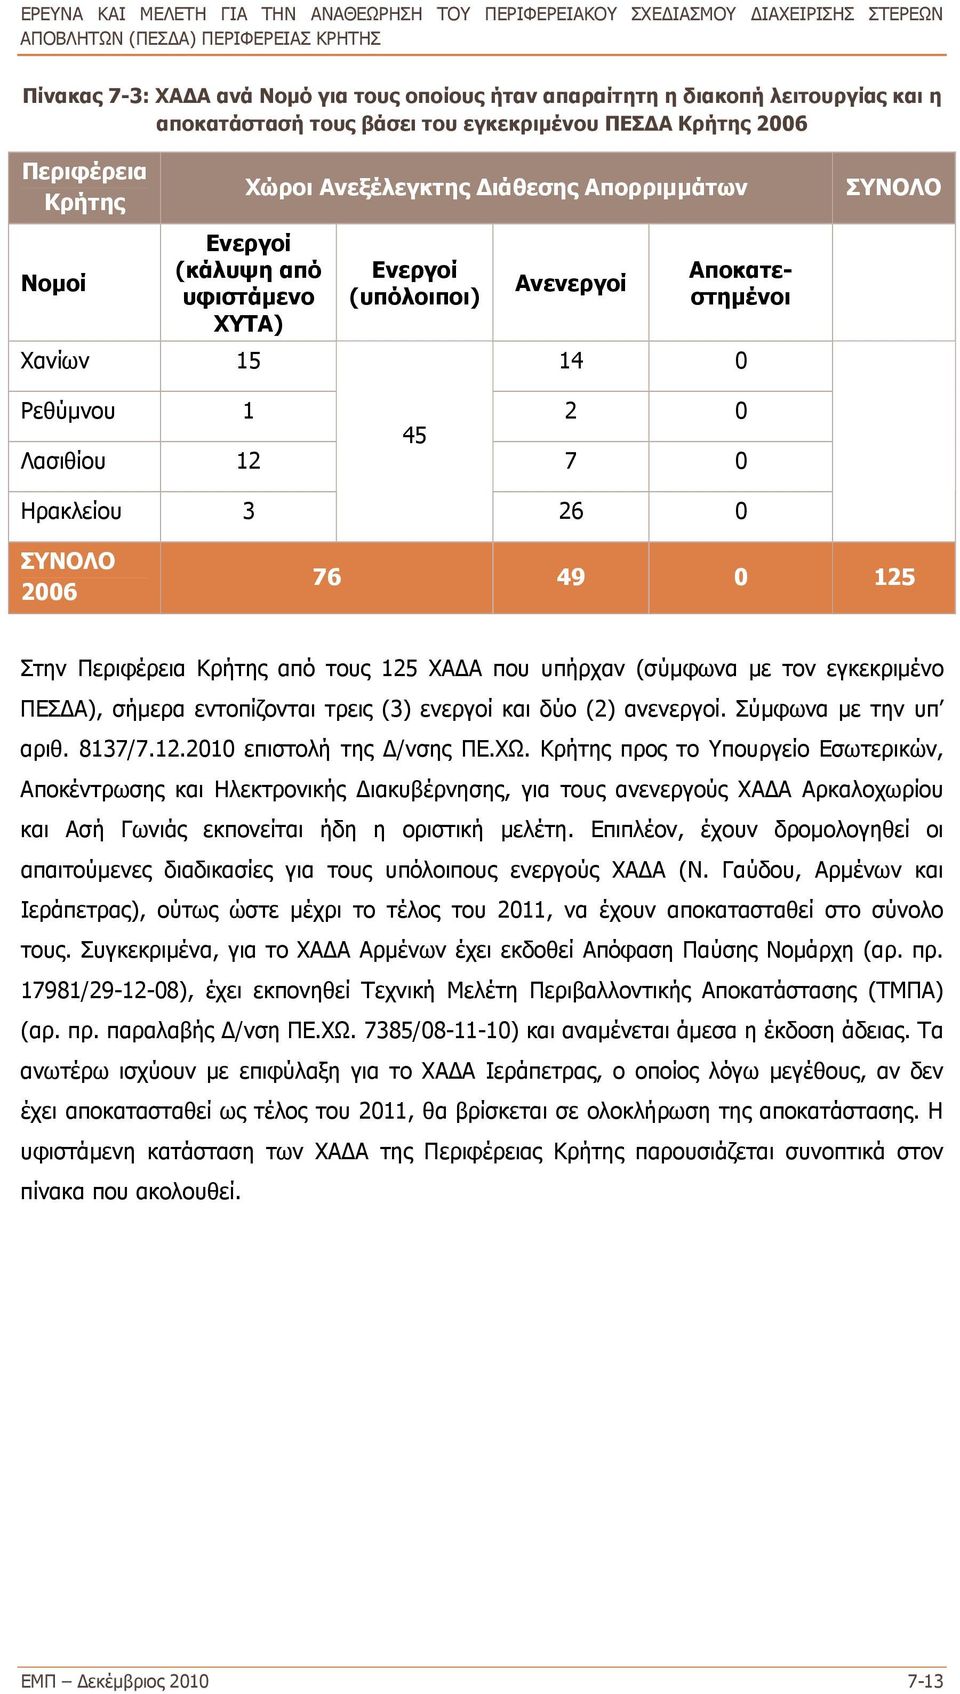 Περιφέρεια Κρήτης από τους 125 ΧΑΔΑ που υπήρχαν (σύμφωνα με τον εγκεκριμένο ΠΕΣΔΑ), σήμερα εντοπίζονται τρεις (3) ενεργοί και δύο (2) ανενεργοί. Σύμφωνα με την υπ αριθ. 8137/7.12.2010 επιστολή της Δ/νσης ΠΕ.